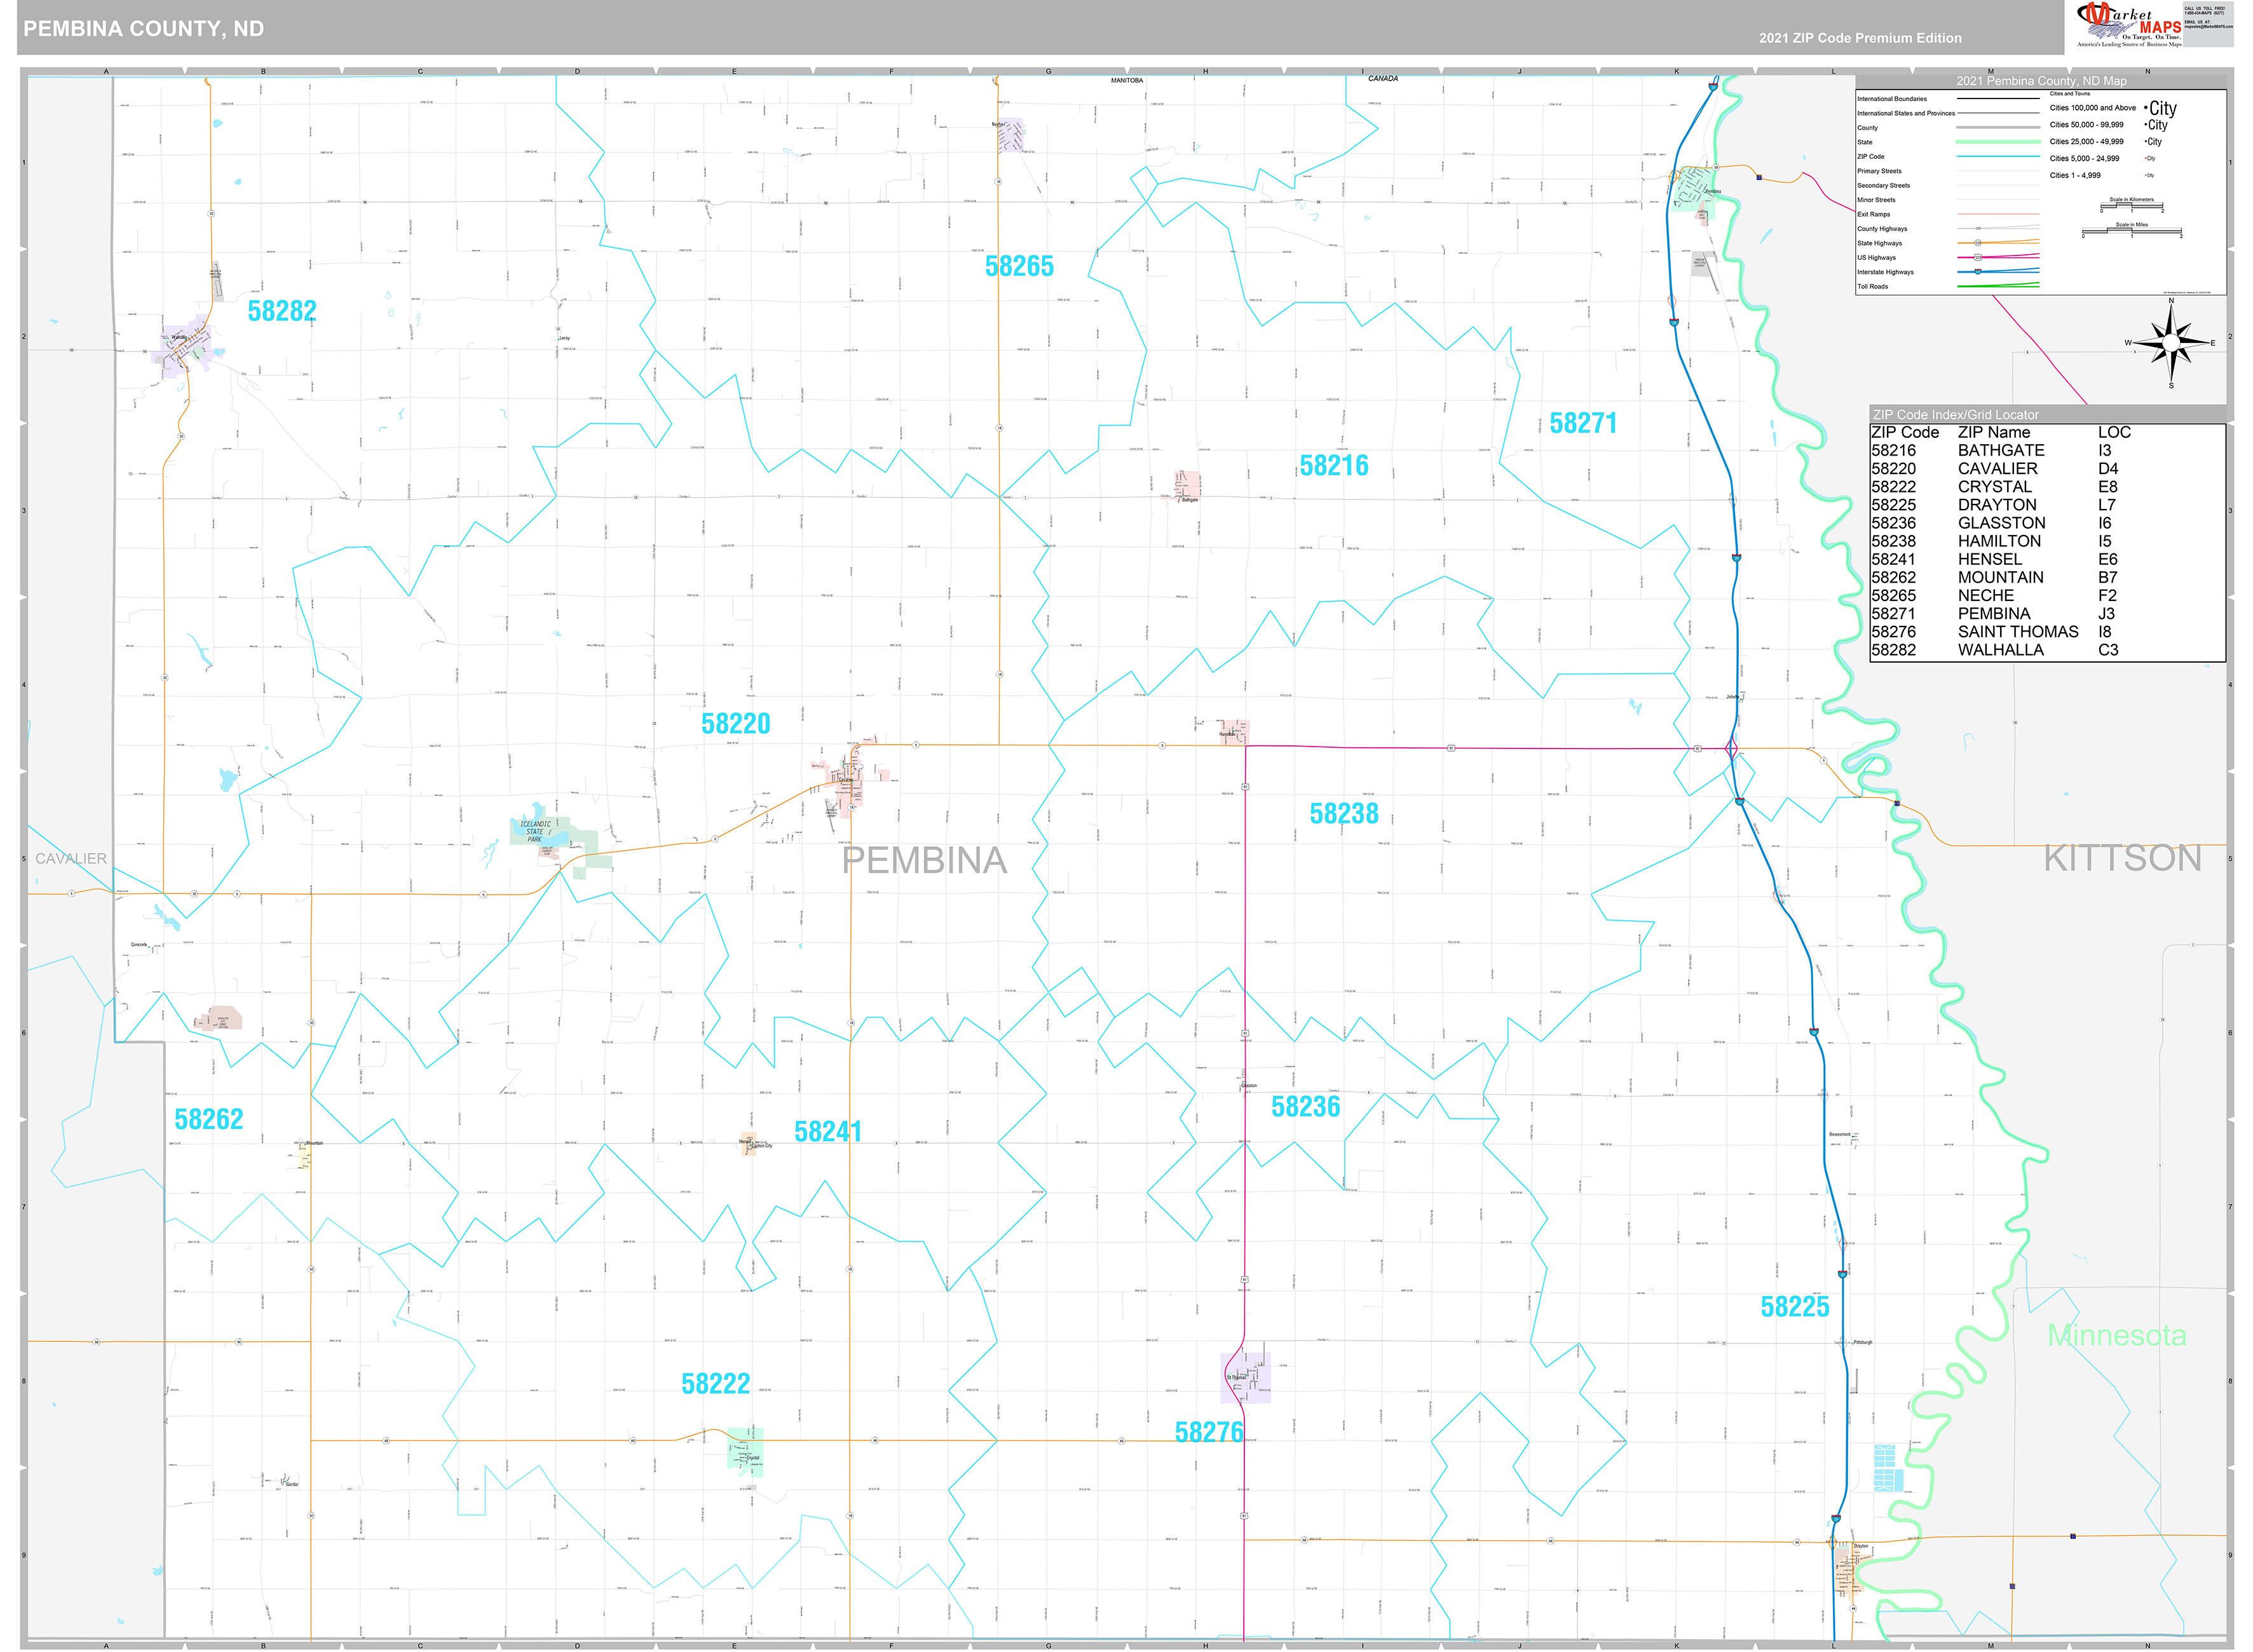 Pembina County, ND Wall Map Premium Style by MarketMAPS